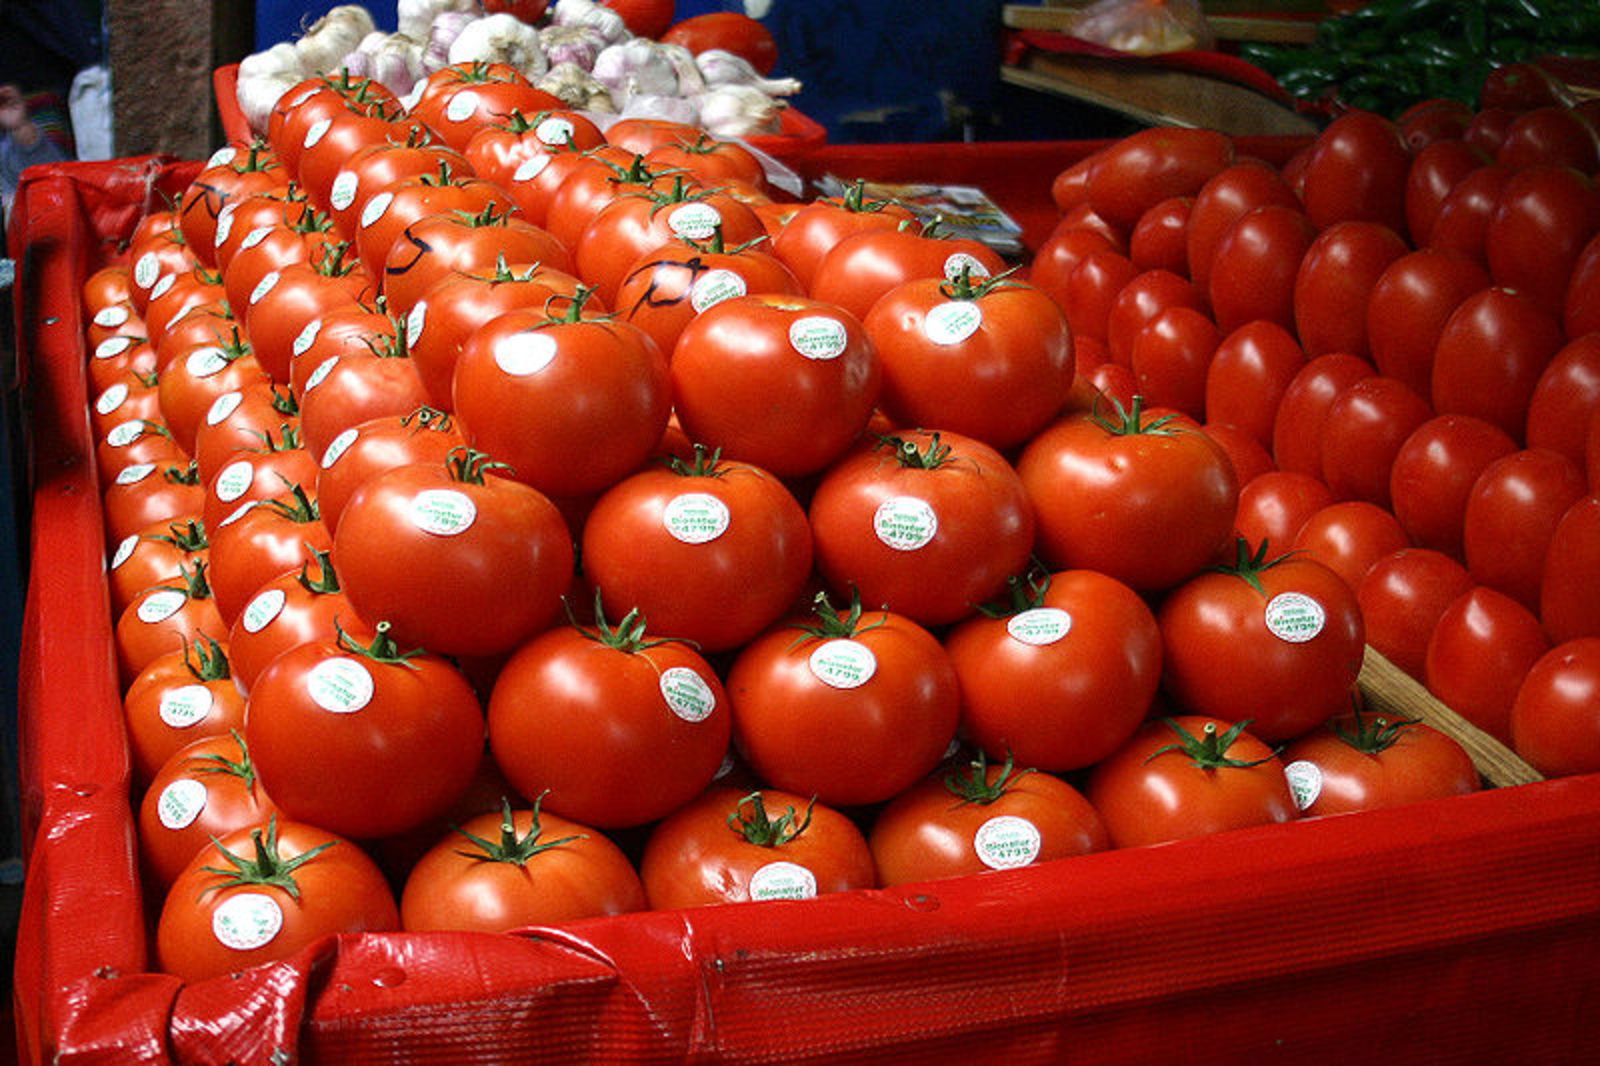 Las autoridades estadounidenses no quieren sentarse a negociar sobre las condiciones de exportación del tomate mexicano.